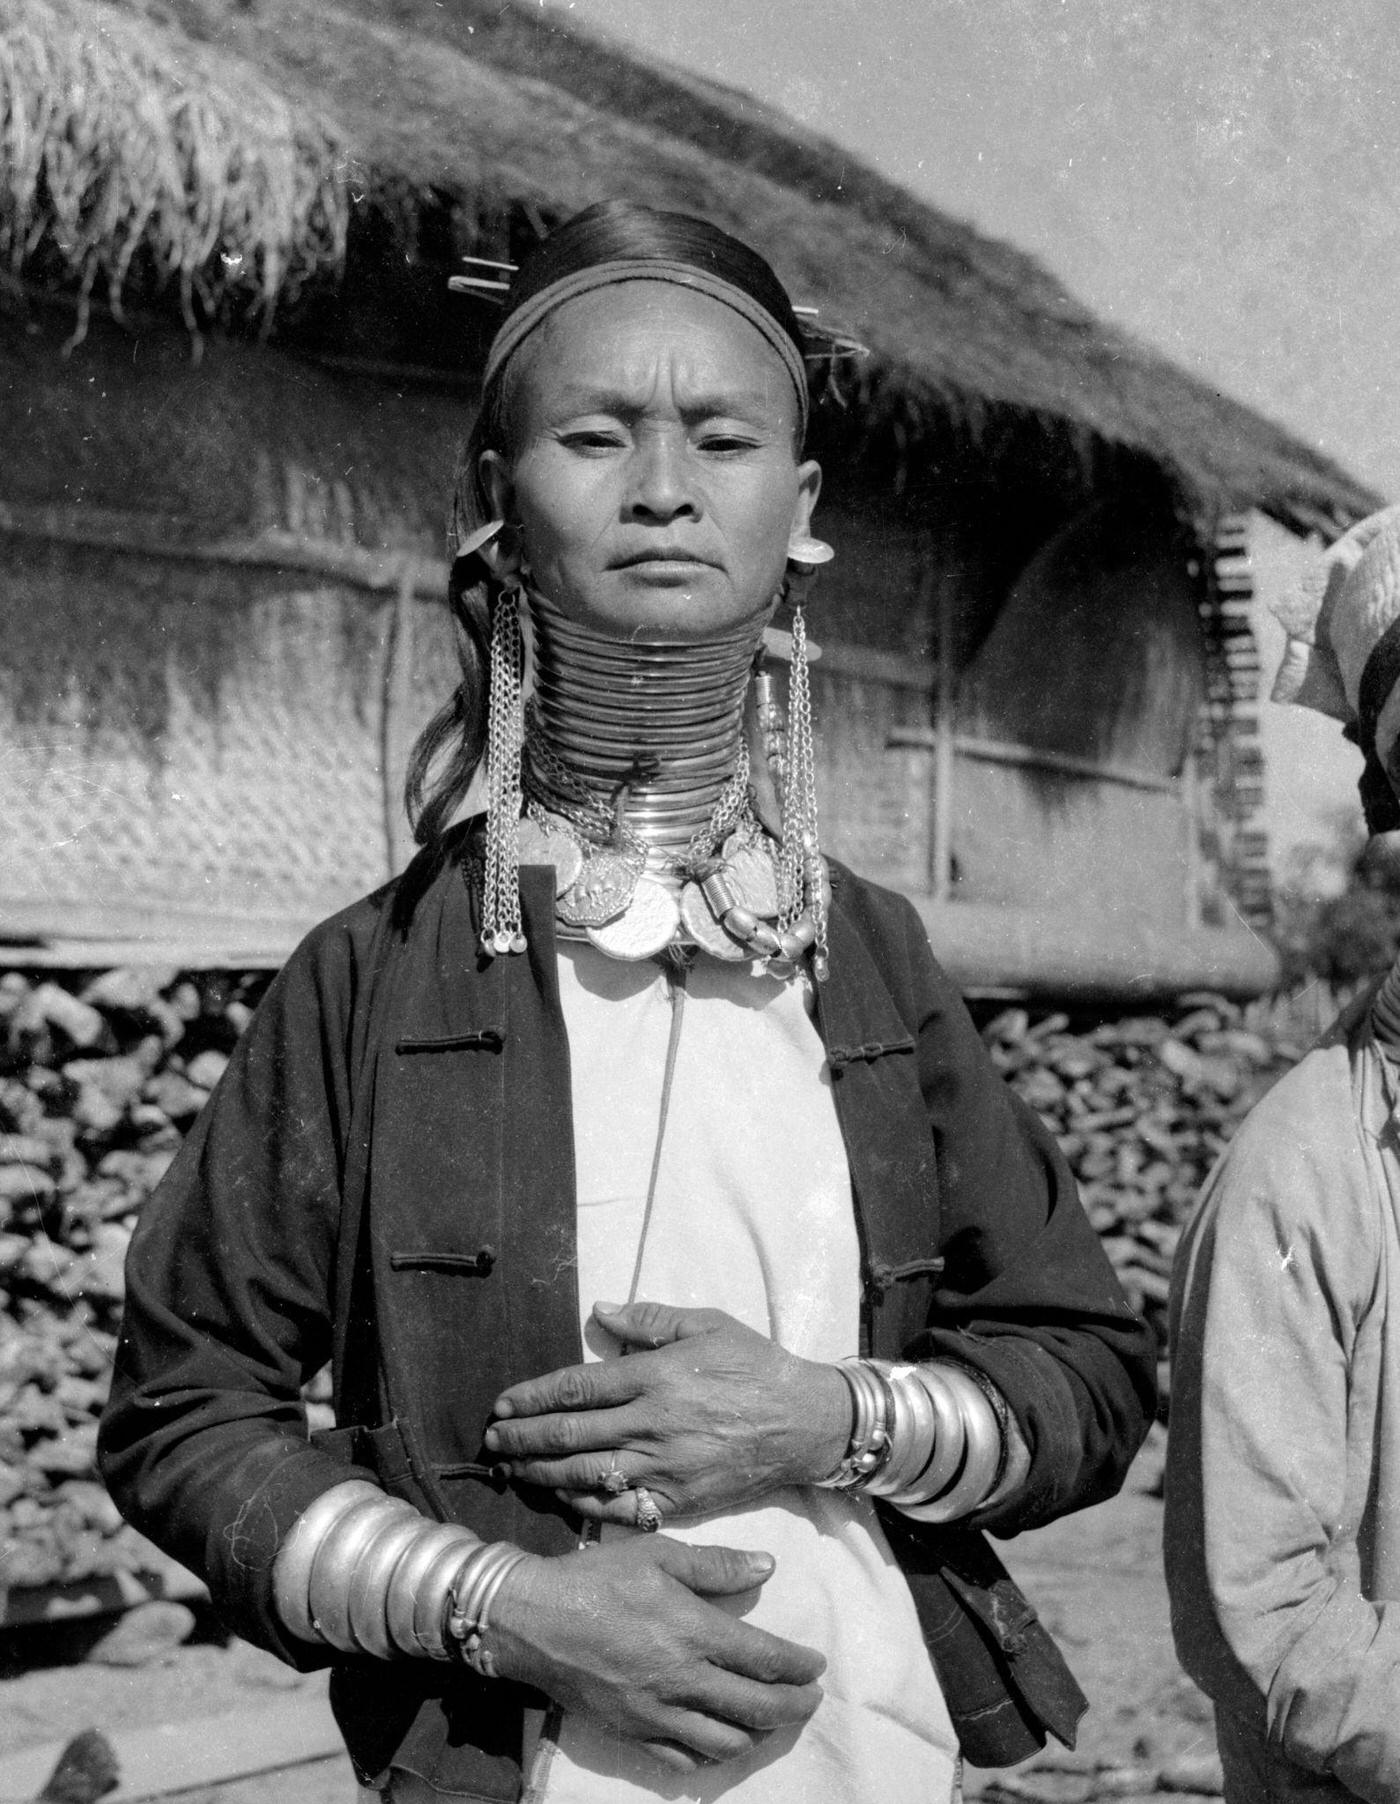 Padaung tribe member wearing brass rings to lengthen her neck, Myanmar, November 1964.